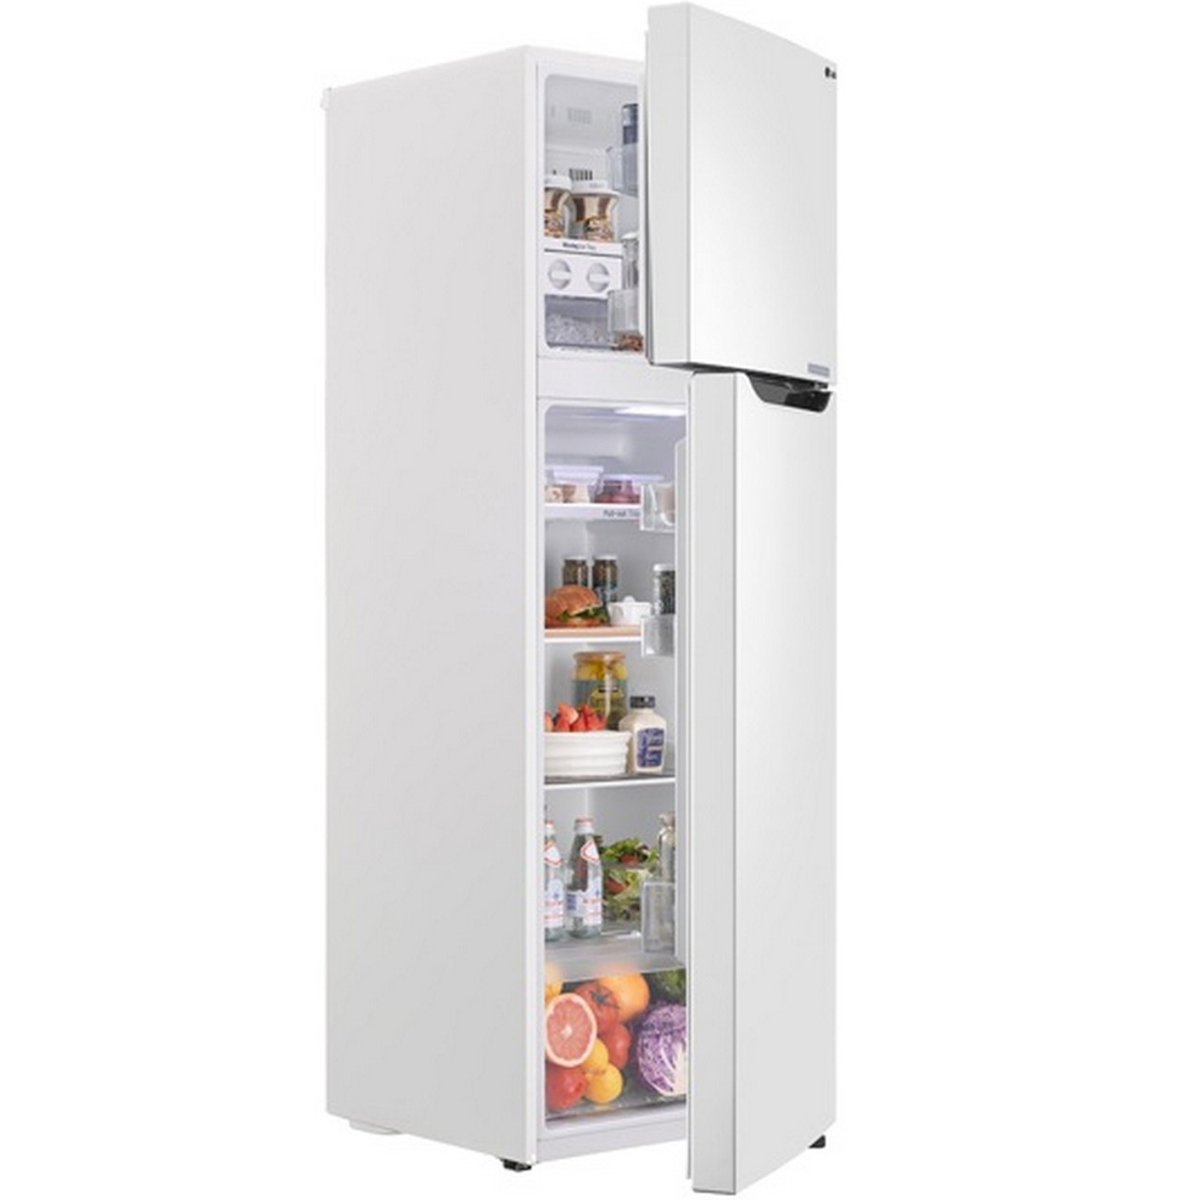 LG Double Door Refrigerator GR-B302SQHL 290Ltr